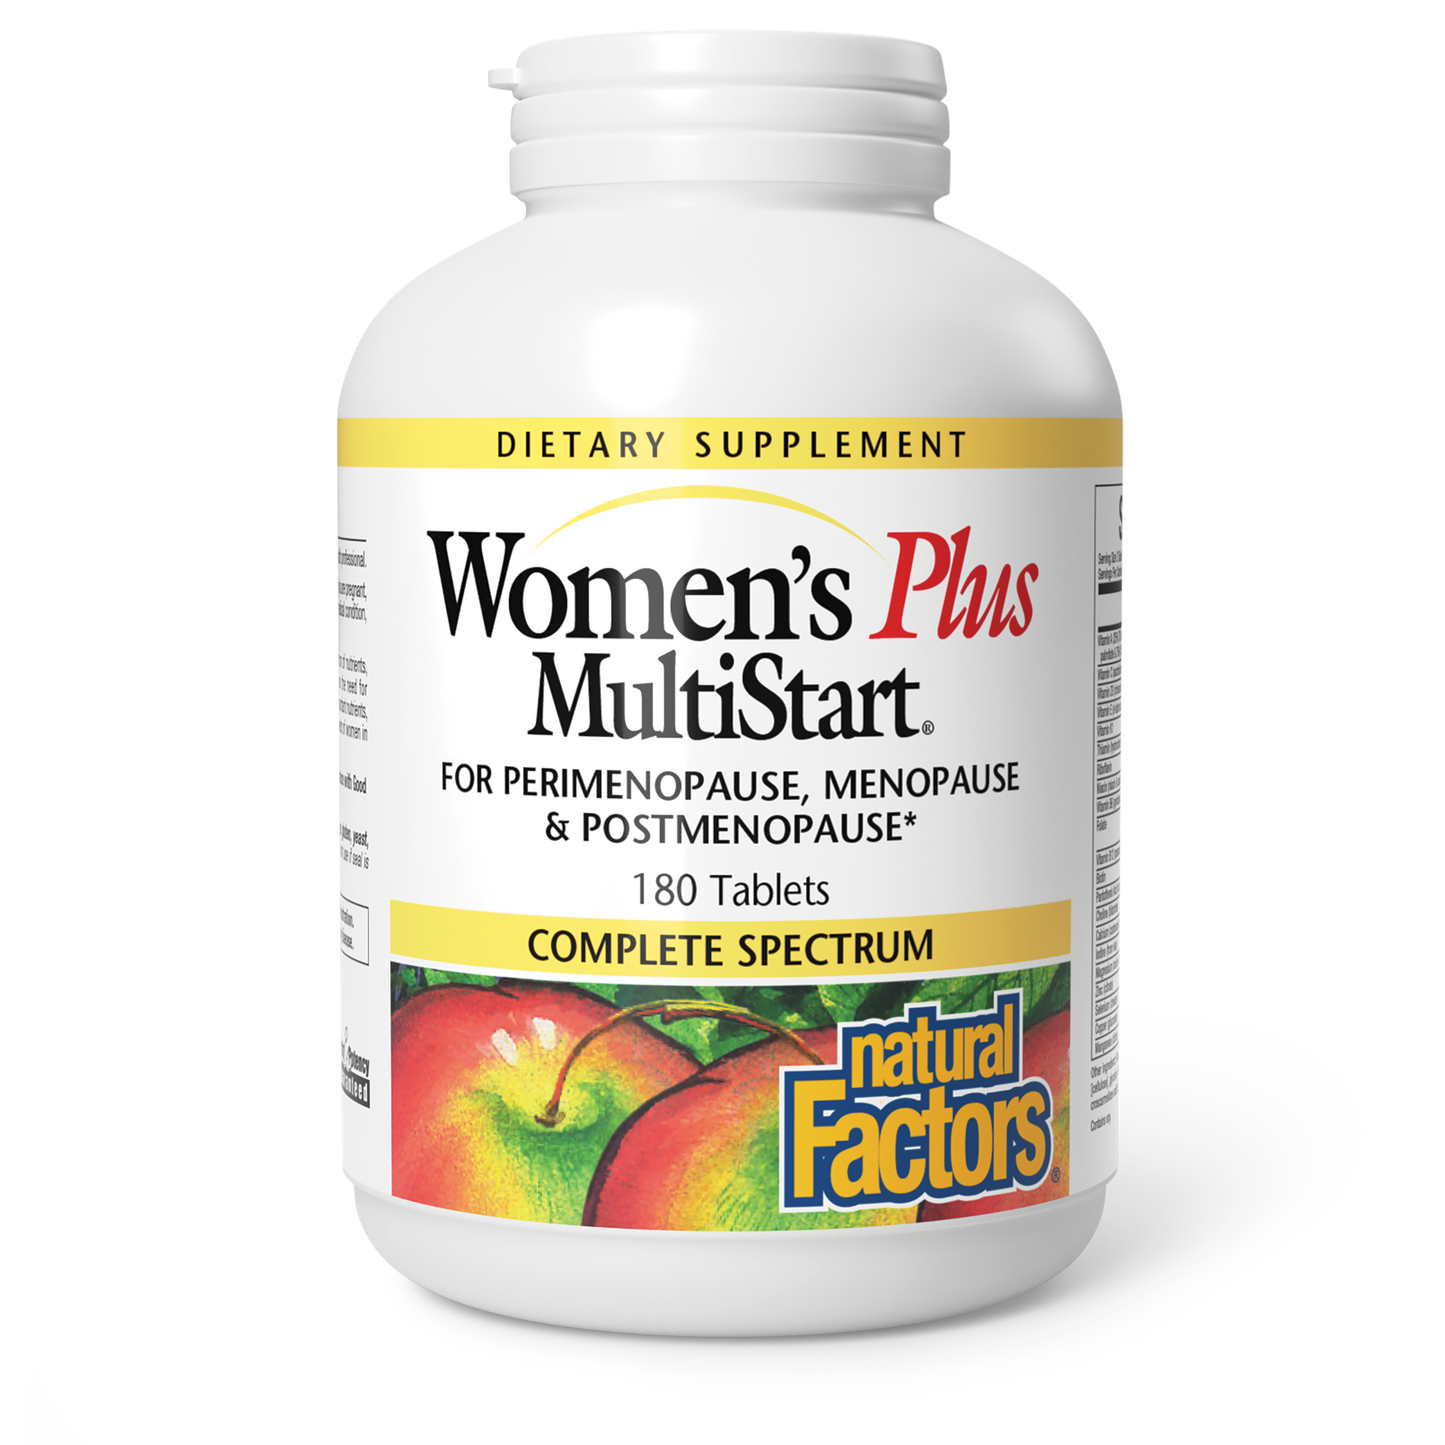 MultiStart® Women's Plus|variant|hi-res|1584U